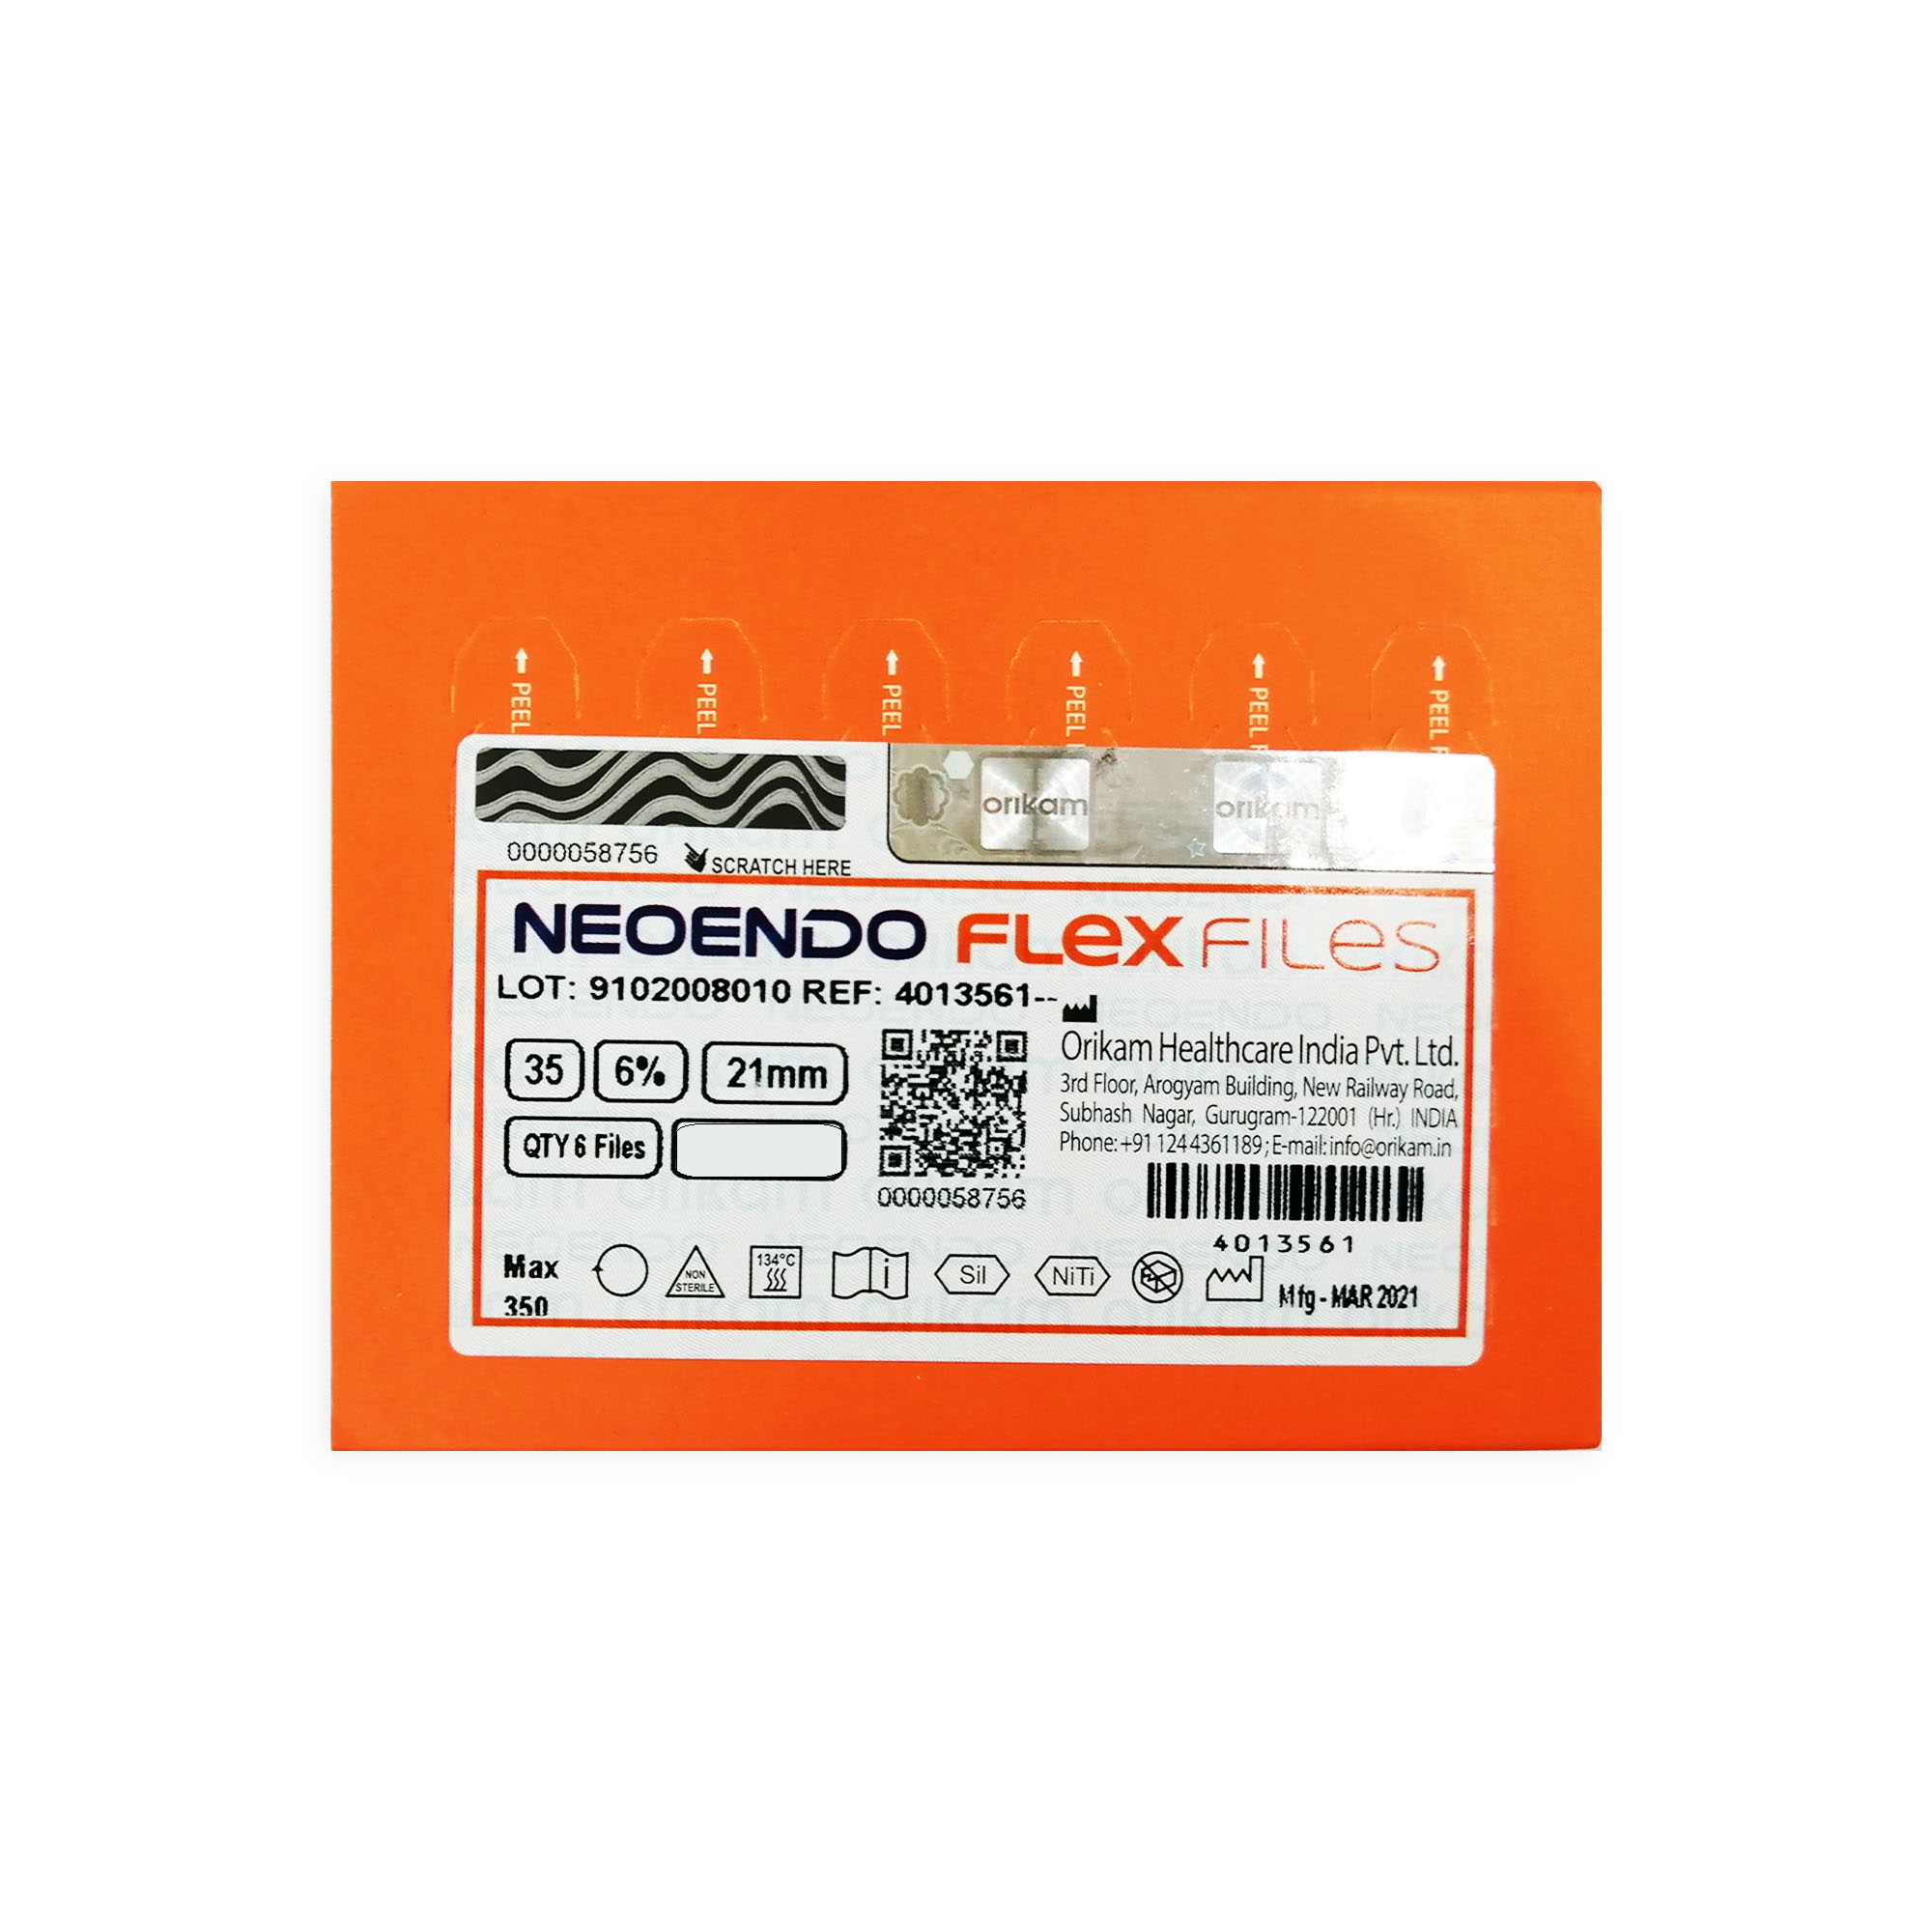 NeoEndo Flex Files 21mm 35/6 Endo Rotary Files